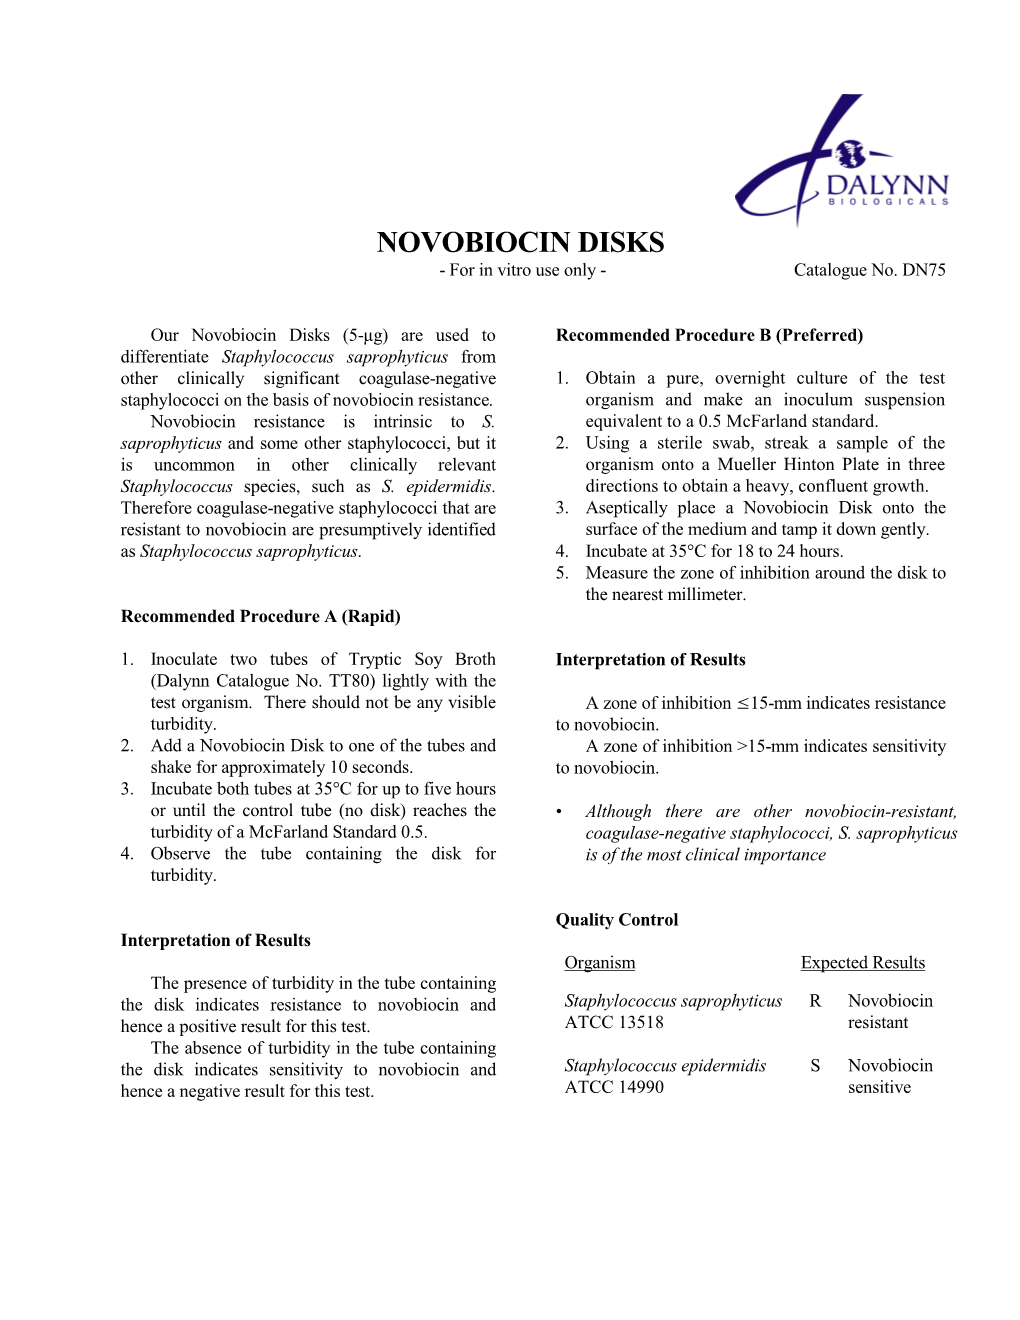 NOVOBIOCIN DISKS - for in Vitro Use Only - Catalogue No